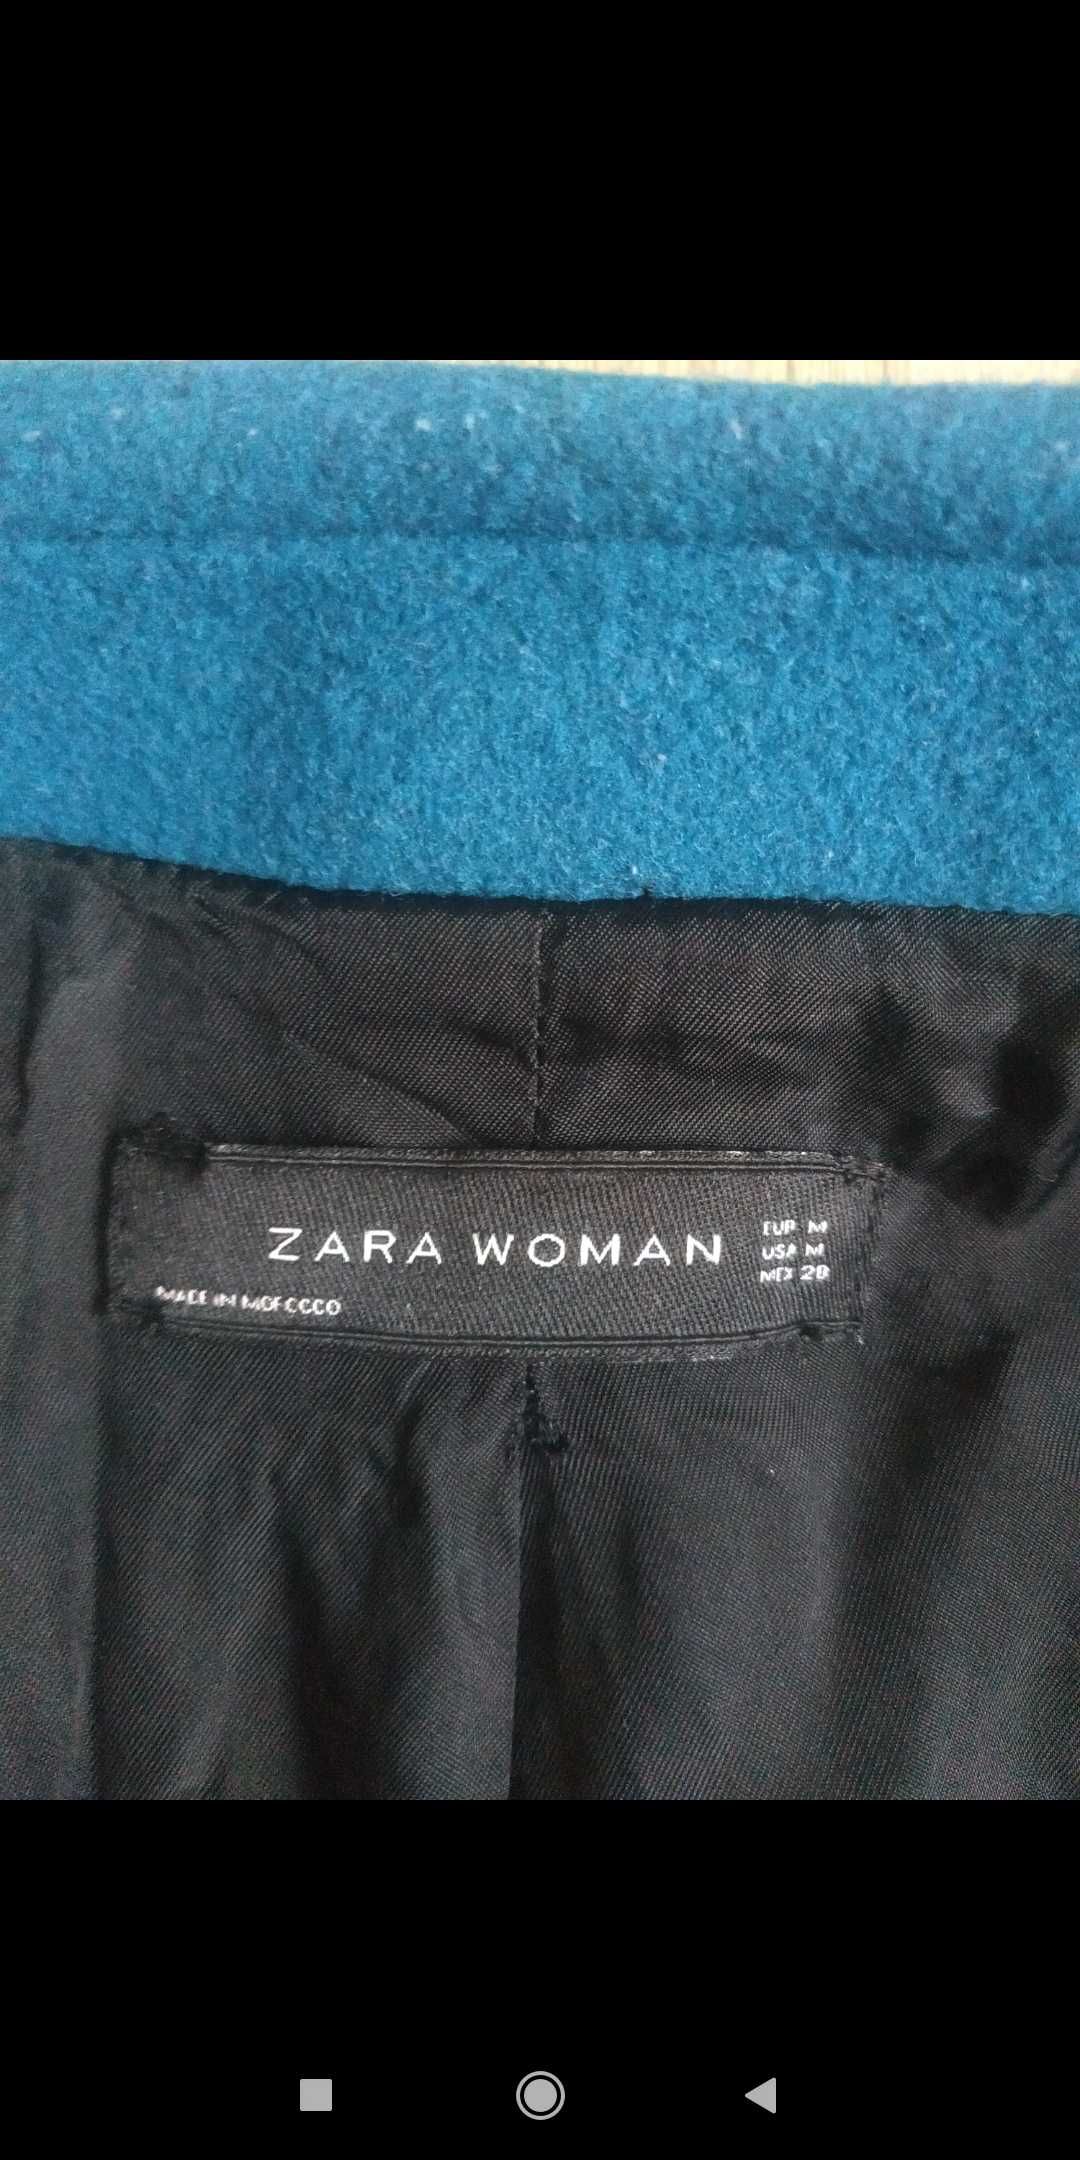 Niebieski zimowy płaszcz Zara rozmiar XS/S